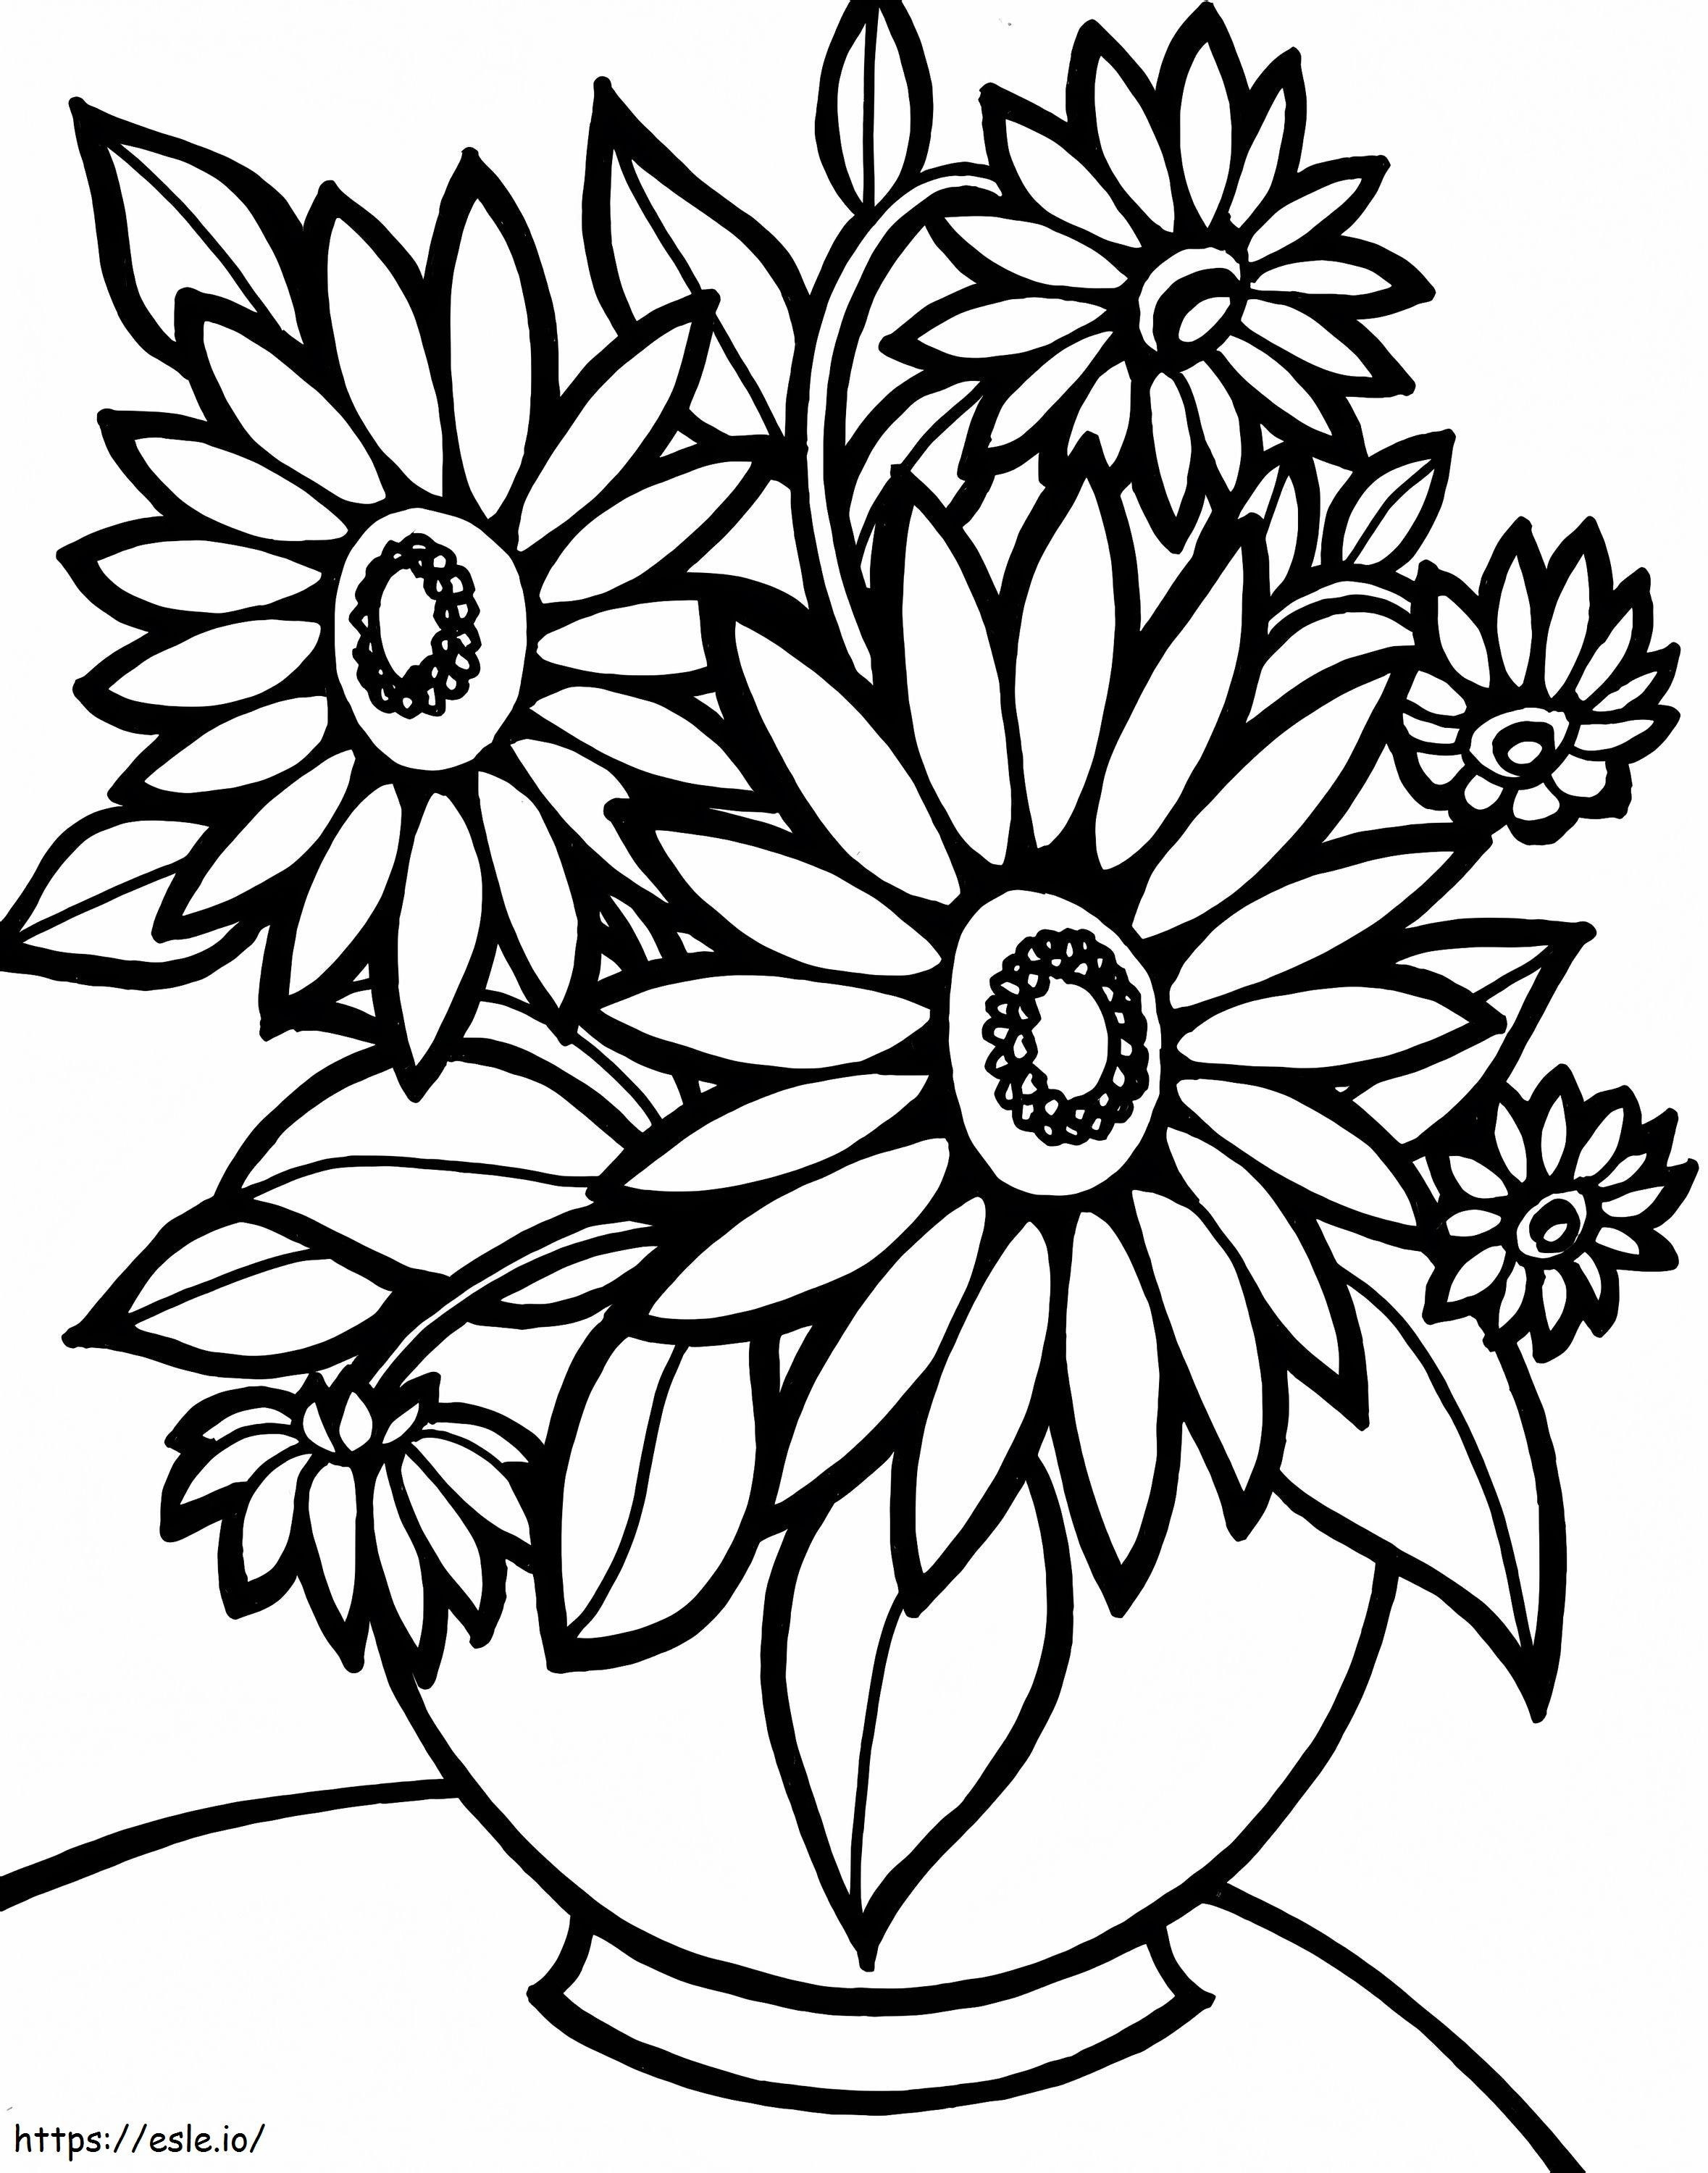 1539917945 Fiore facile da stampare Colorazione destinata a fiori facilmente stampabili per quanto riguarda i bambini da colorare